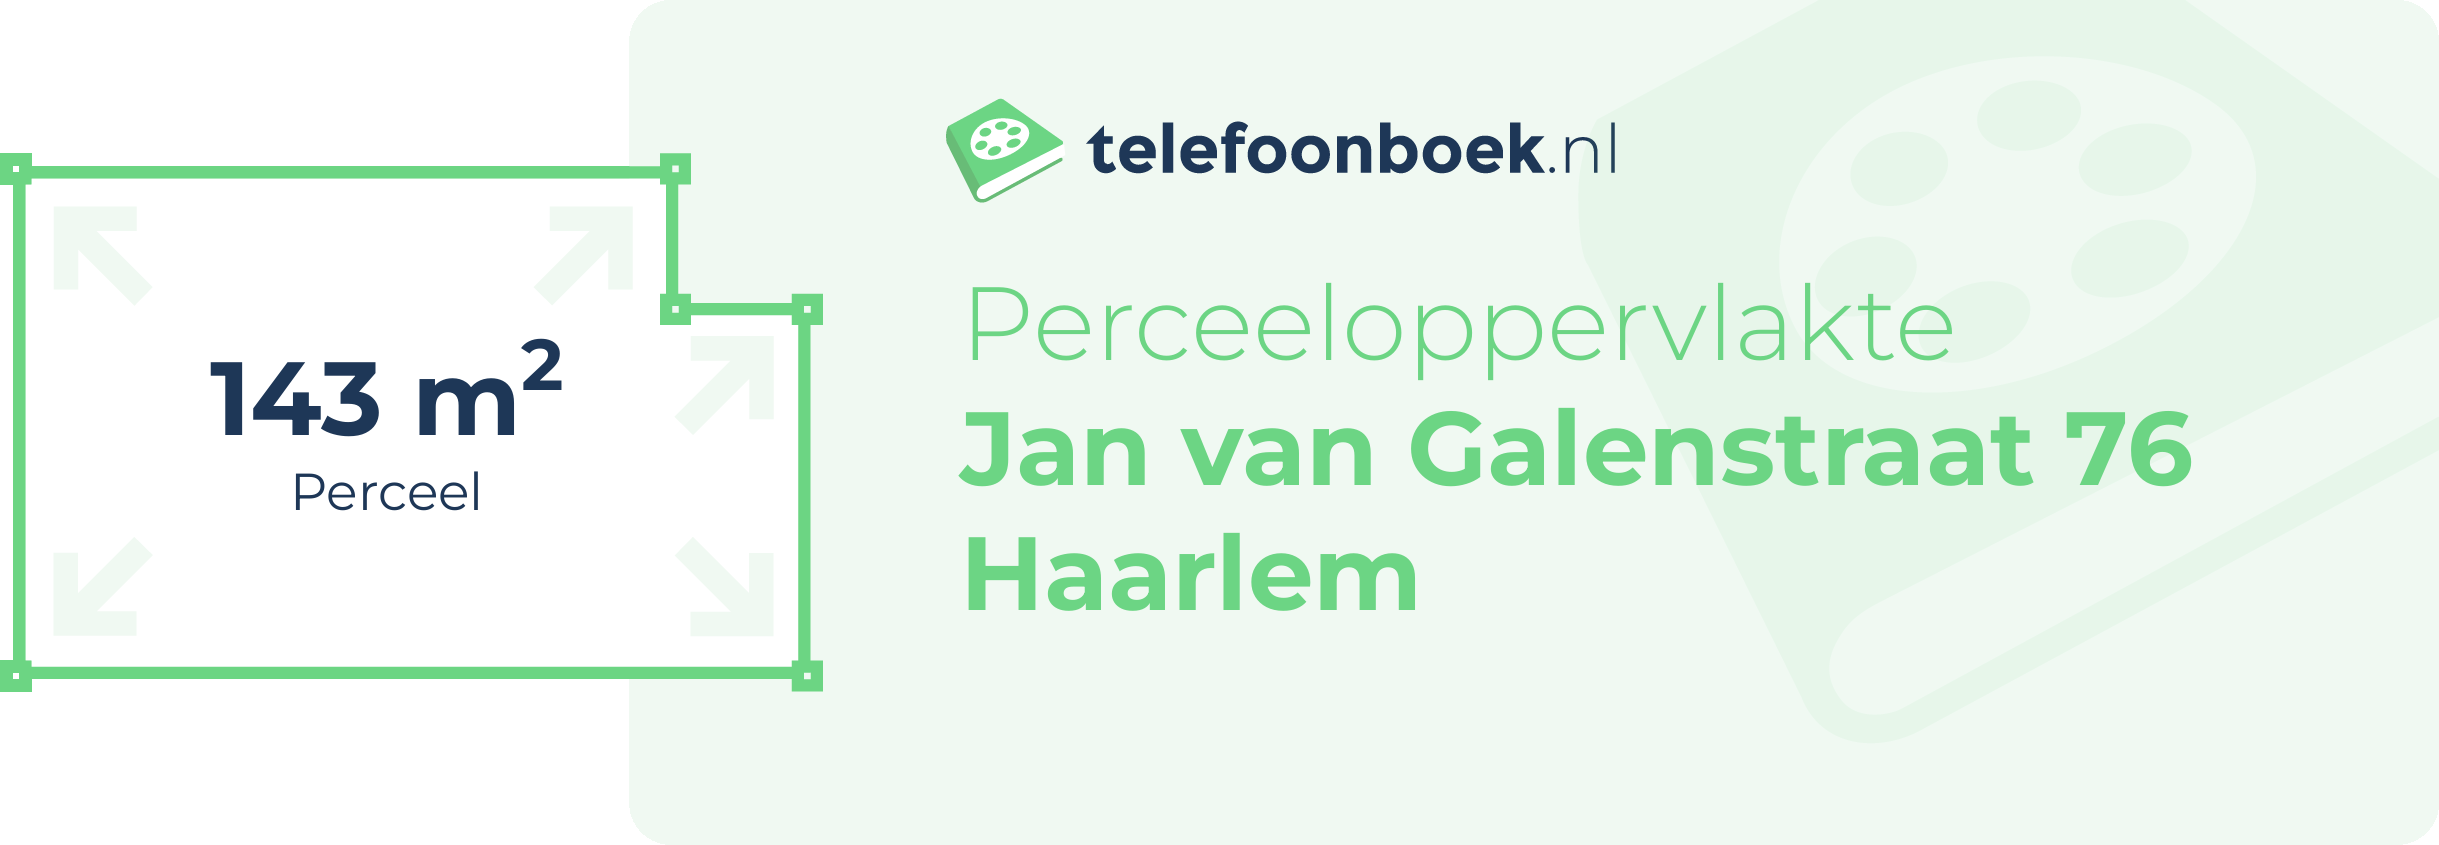 Perceeloppervlakte Jan Van Galenstraat 76 Haarlem